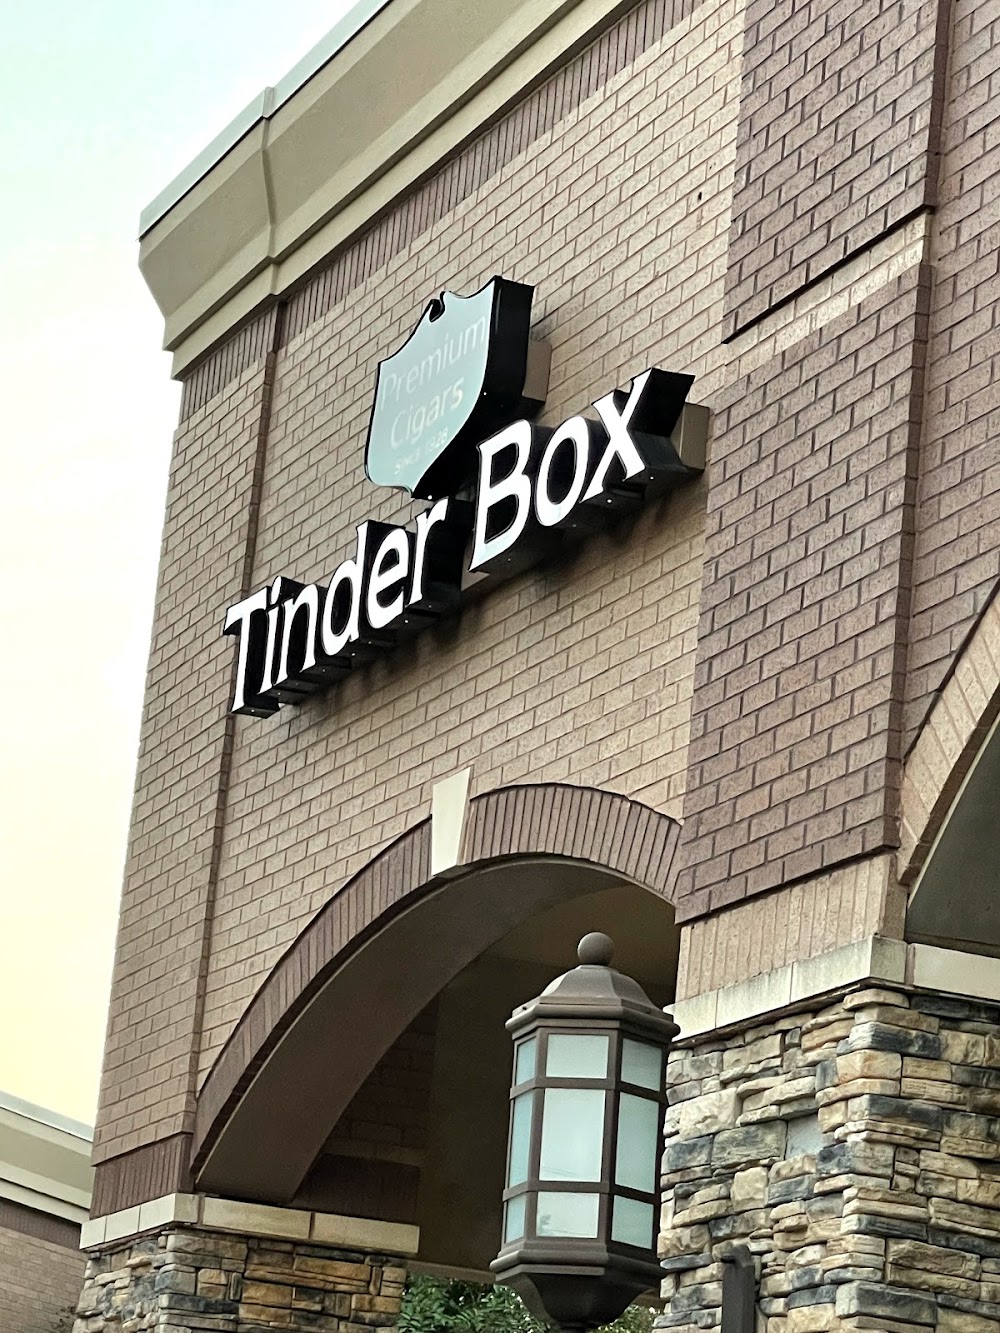 Tinder Box Lakeland, TN